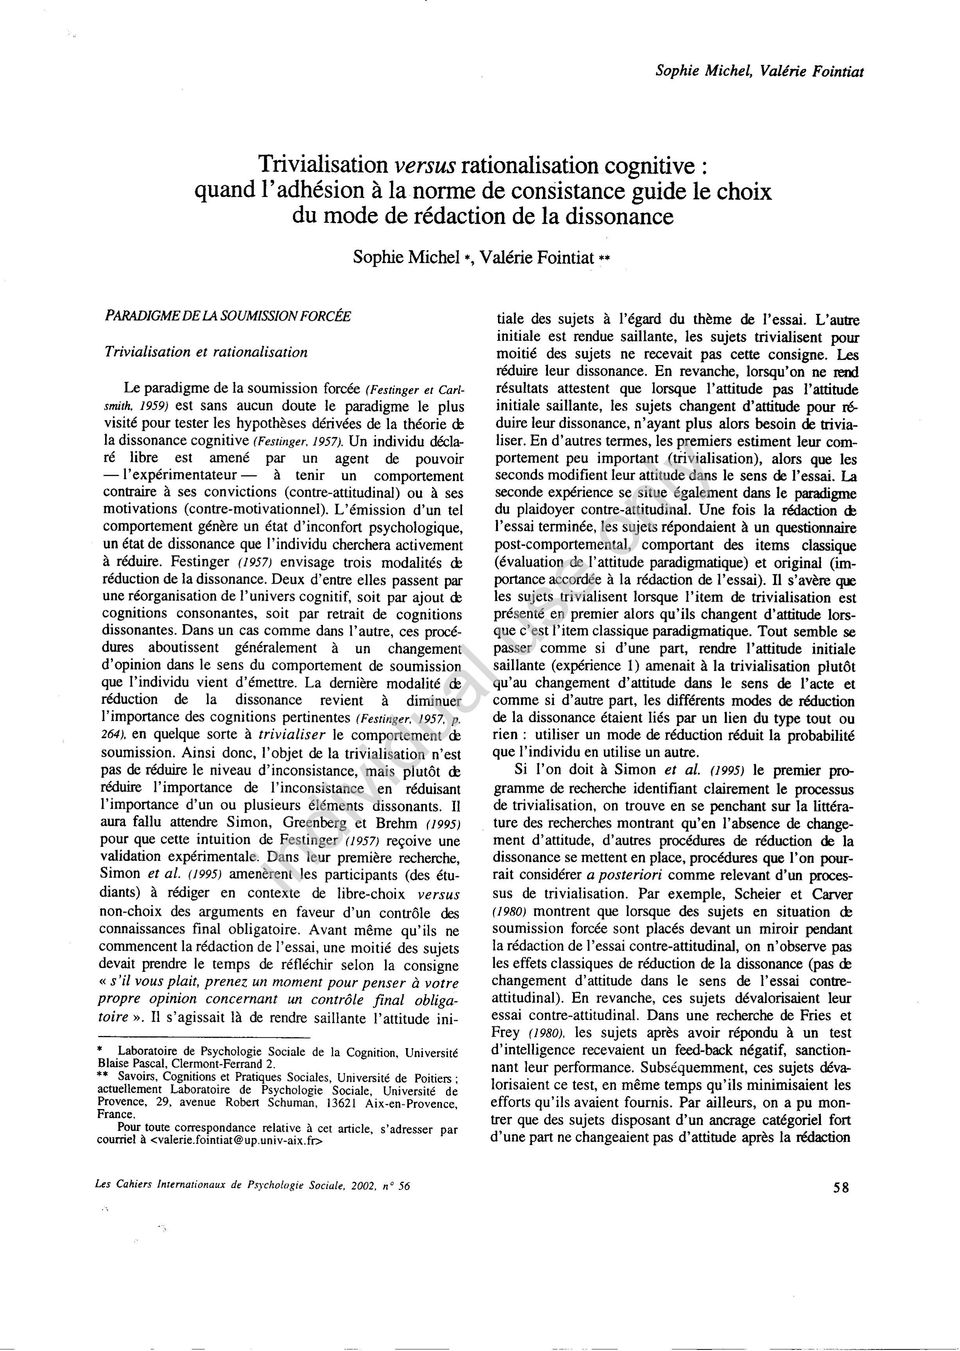 1959) est sans aucun doute le paradigme le plus visité pour tester les hypothèses dérivées de la théorie ds la dissonance cognitive (Festinger, 1957).